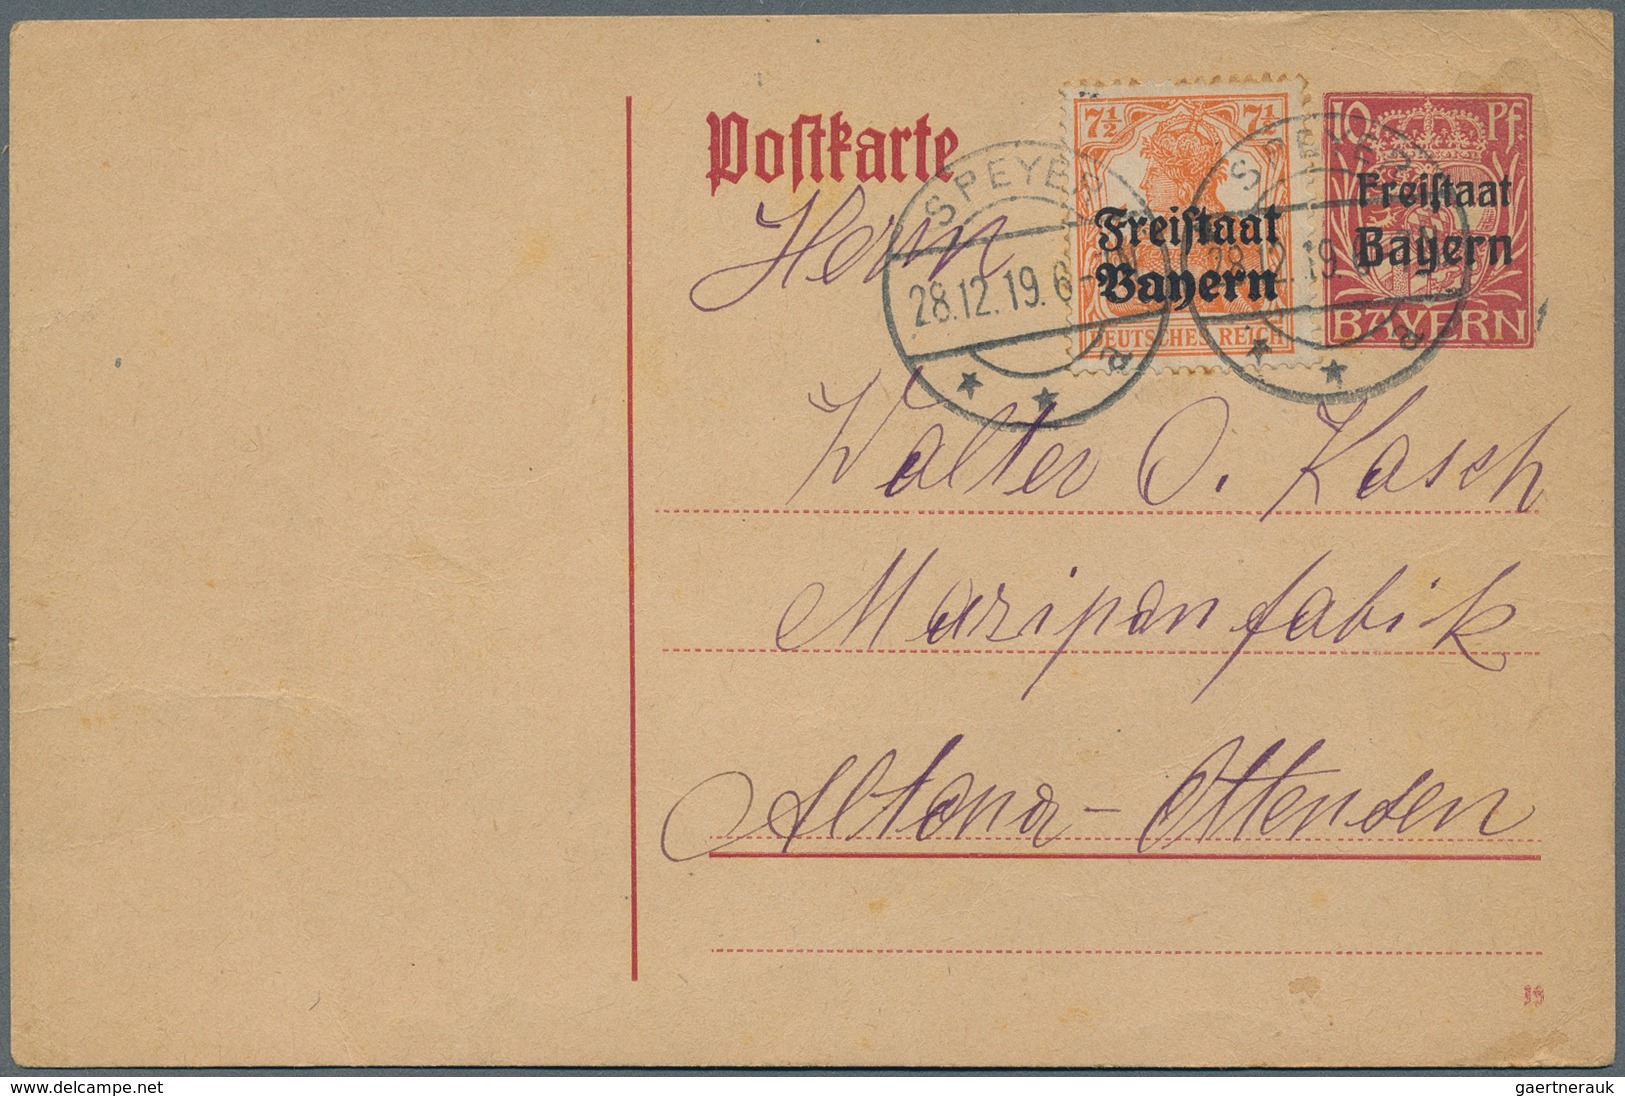 Bayern - Marken und Briefe: 1850/1920, meist gestempelte Partie auf 13 Steckkarten, etwas unterschie